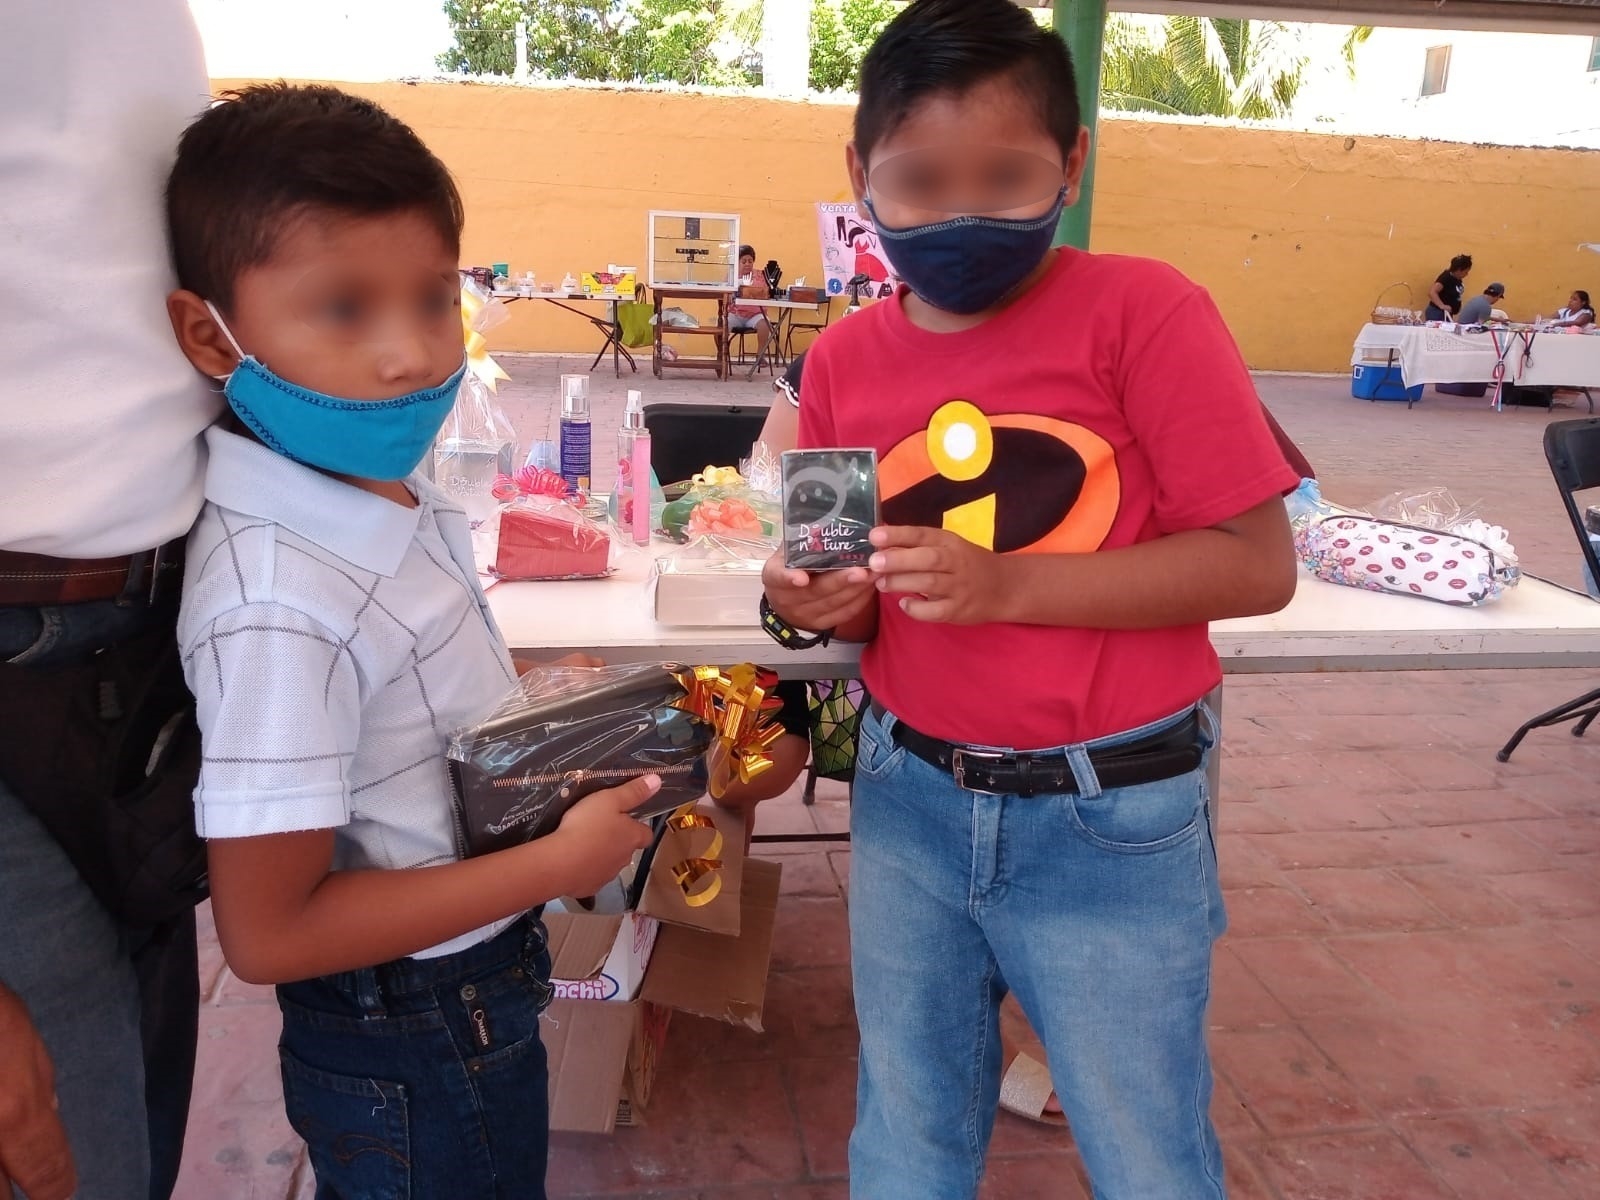 Los estudiantes deberán considerar el tipo de cubrebocas que podrán usar dentro de las escuelas en México